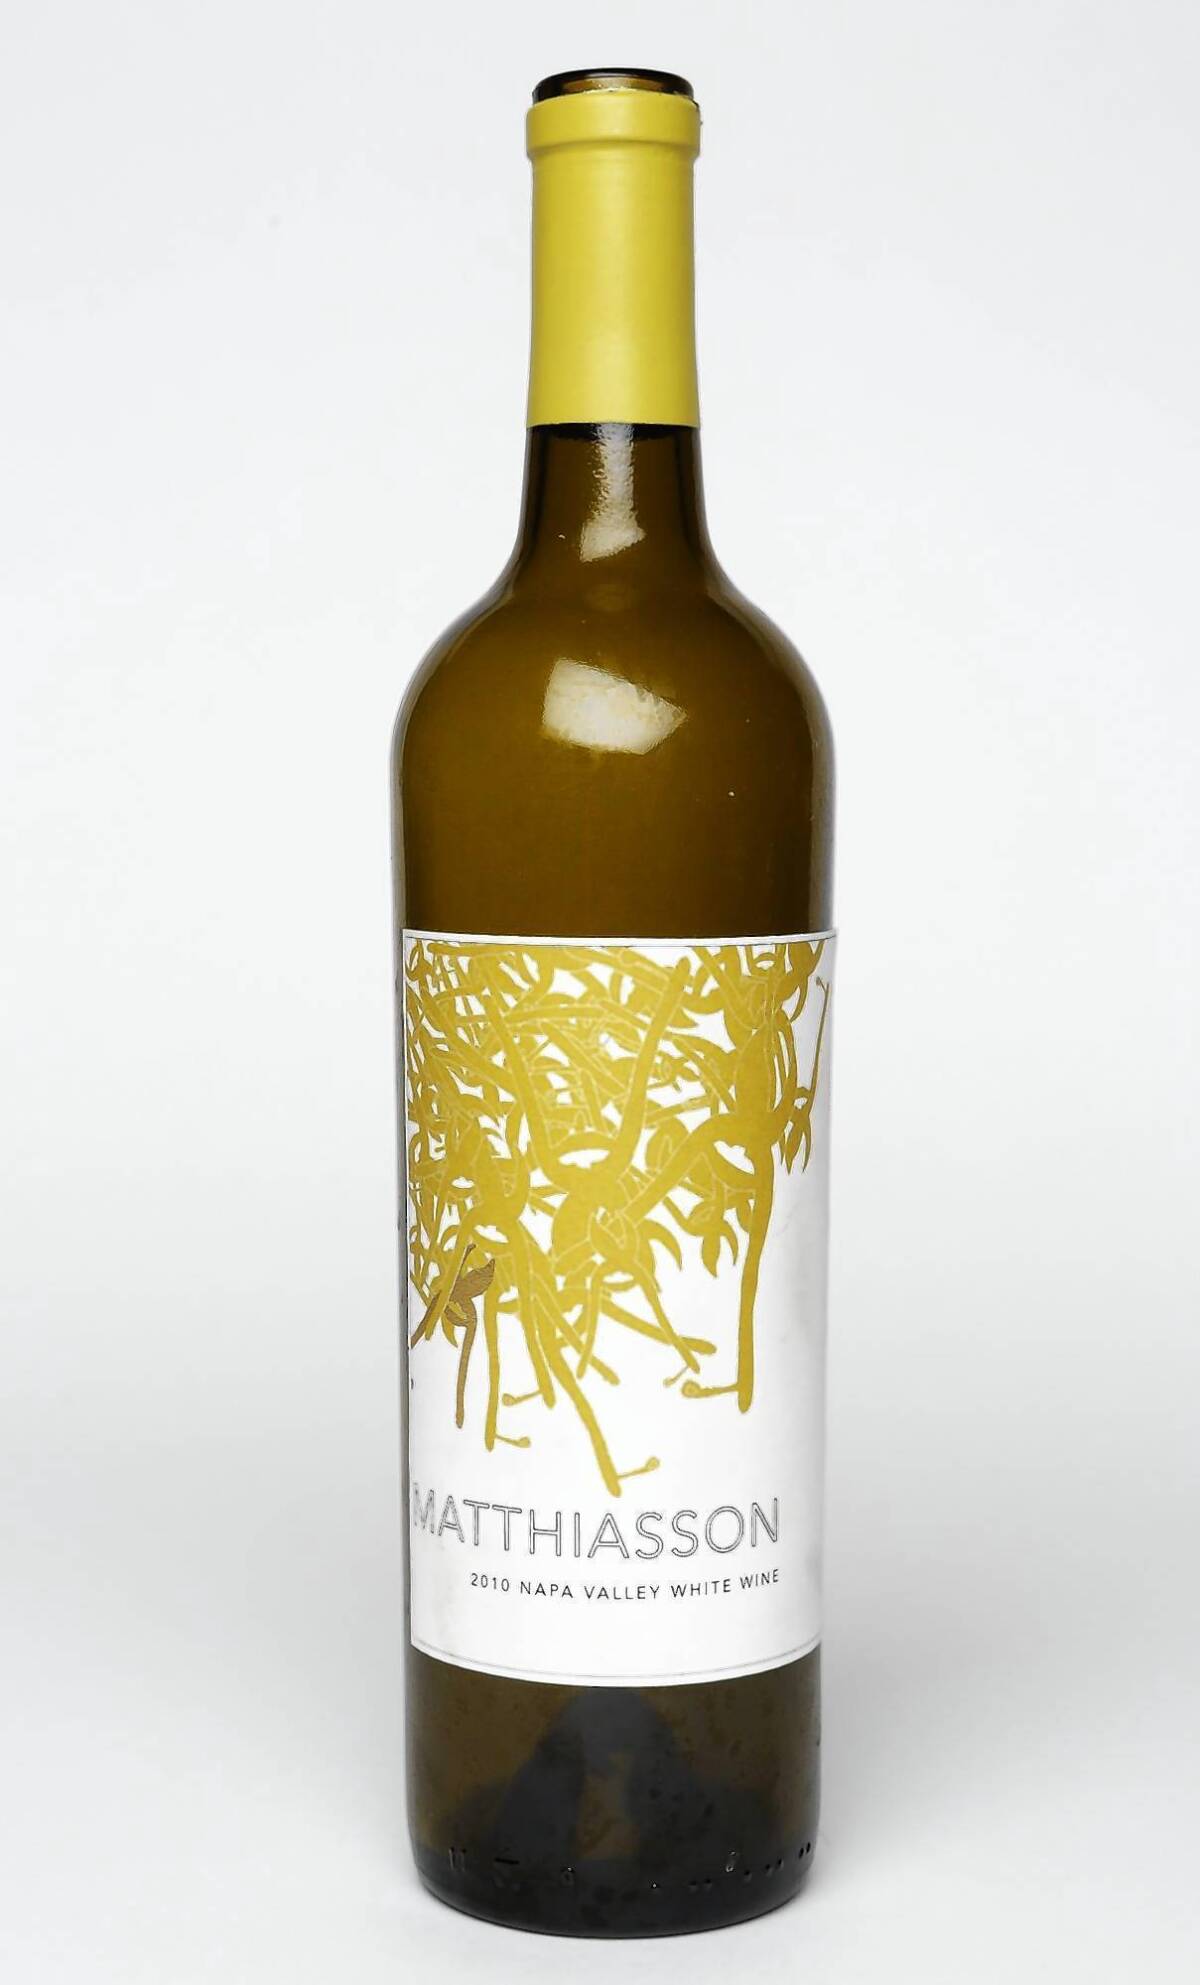 2010 Matthiasson Napa Valley white wine.